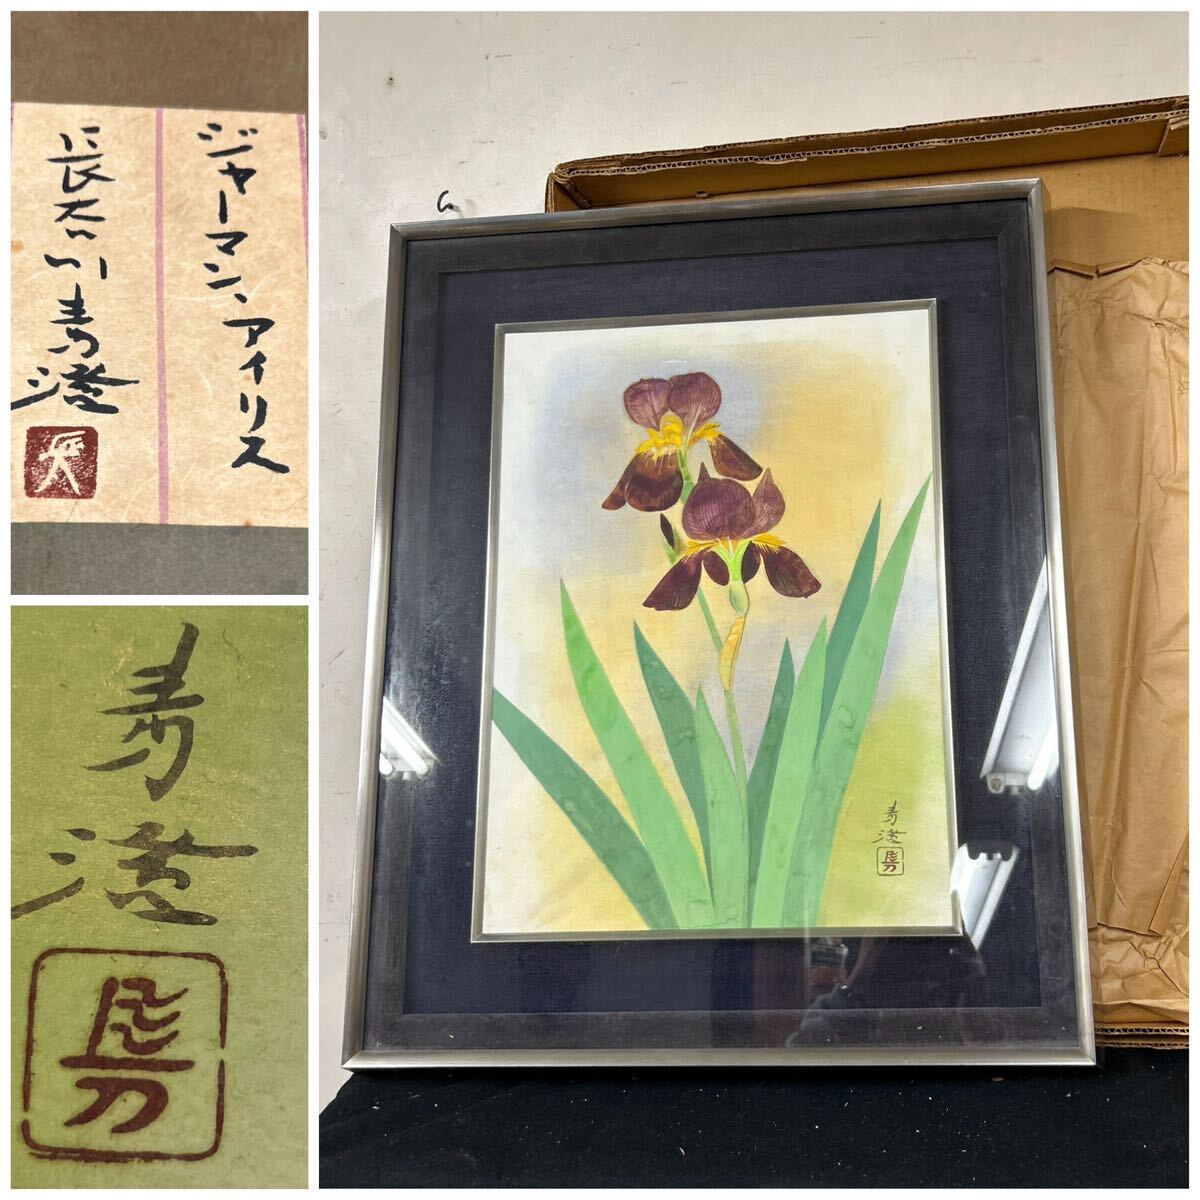 [عمل أصيل] Seisumi Hasegawa الألمانية إيريس إطار معدني زهرة زهرة اللوحة اليابانية اللوحة مؤطرة الختم, تلوين, ألوان مائية, لوحة الحياة الساكنة